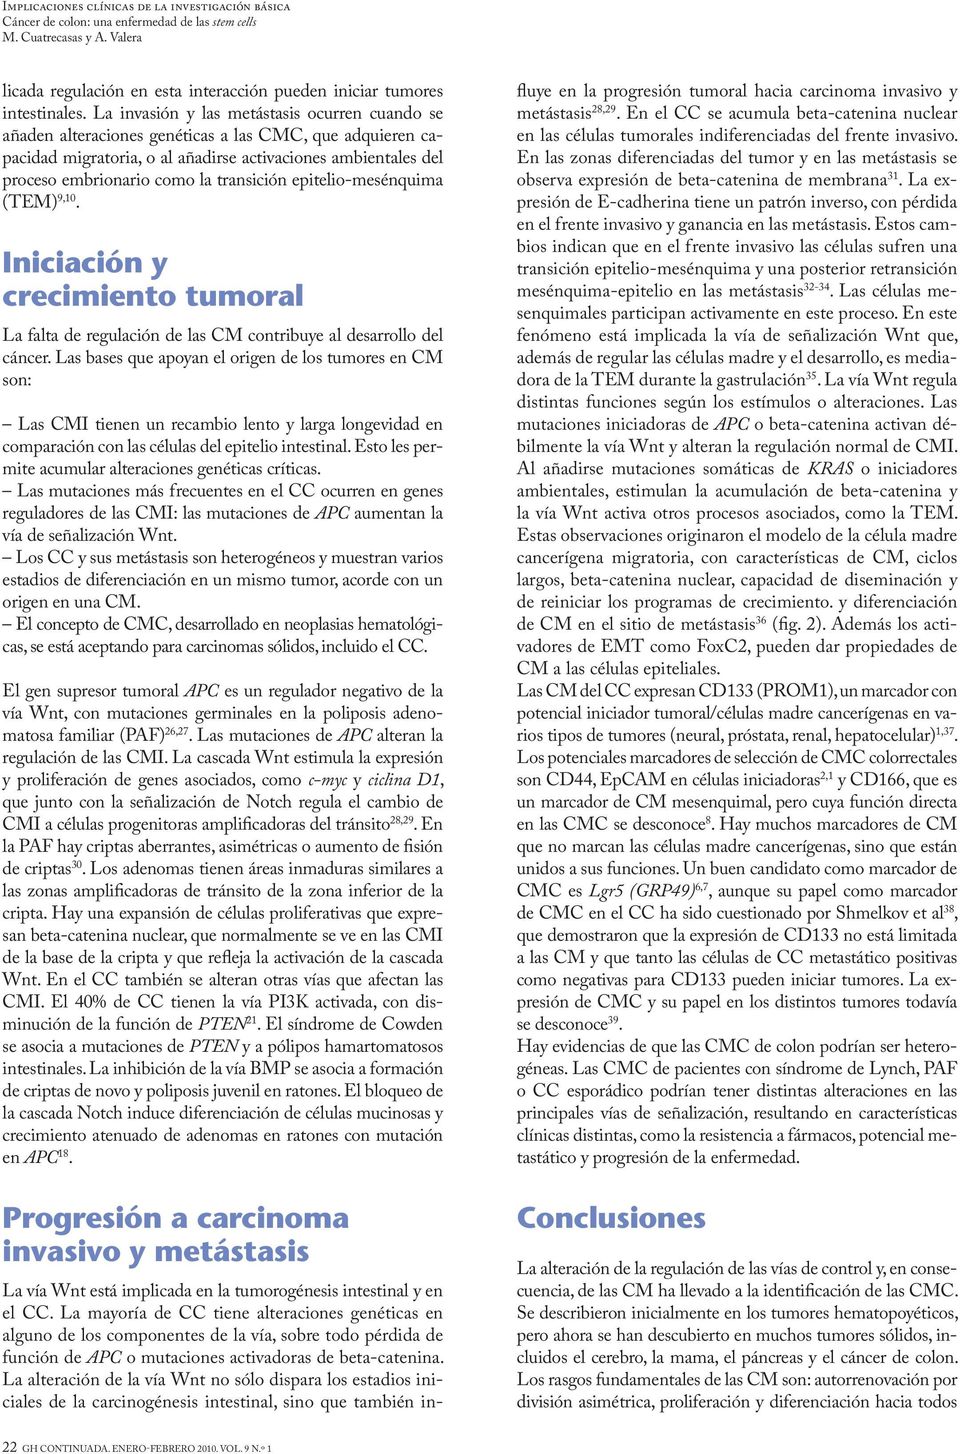 transición epitelio-mesénquima (TEM) 9,10. Iniciación y crecimiento tumoral La falta de regulación de las CM contribuye al desarrollo del cáncer.